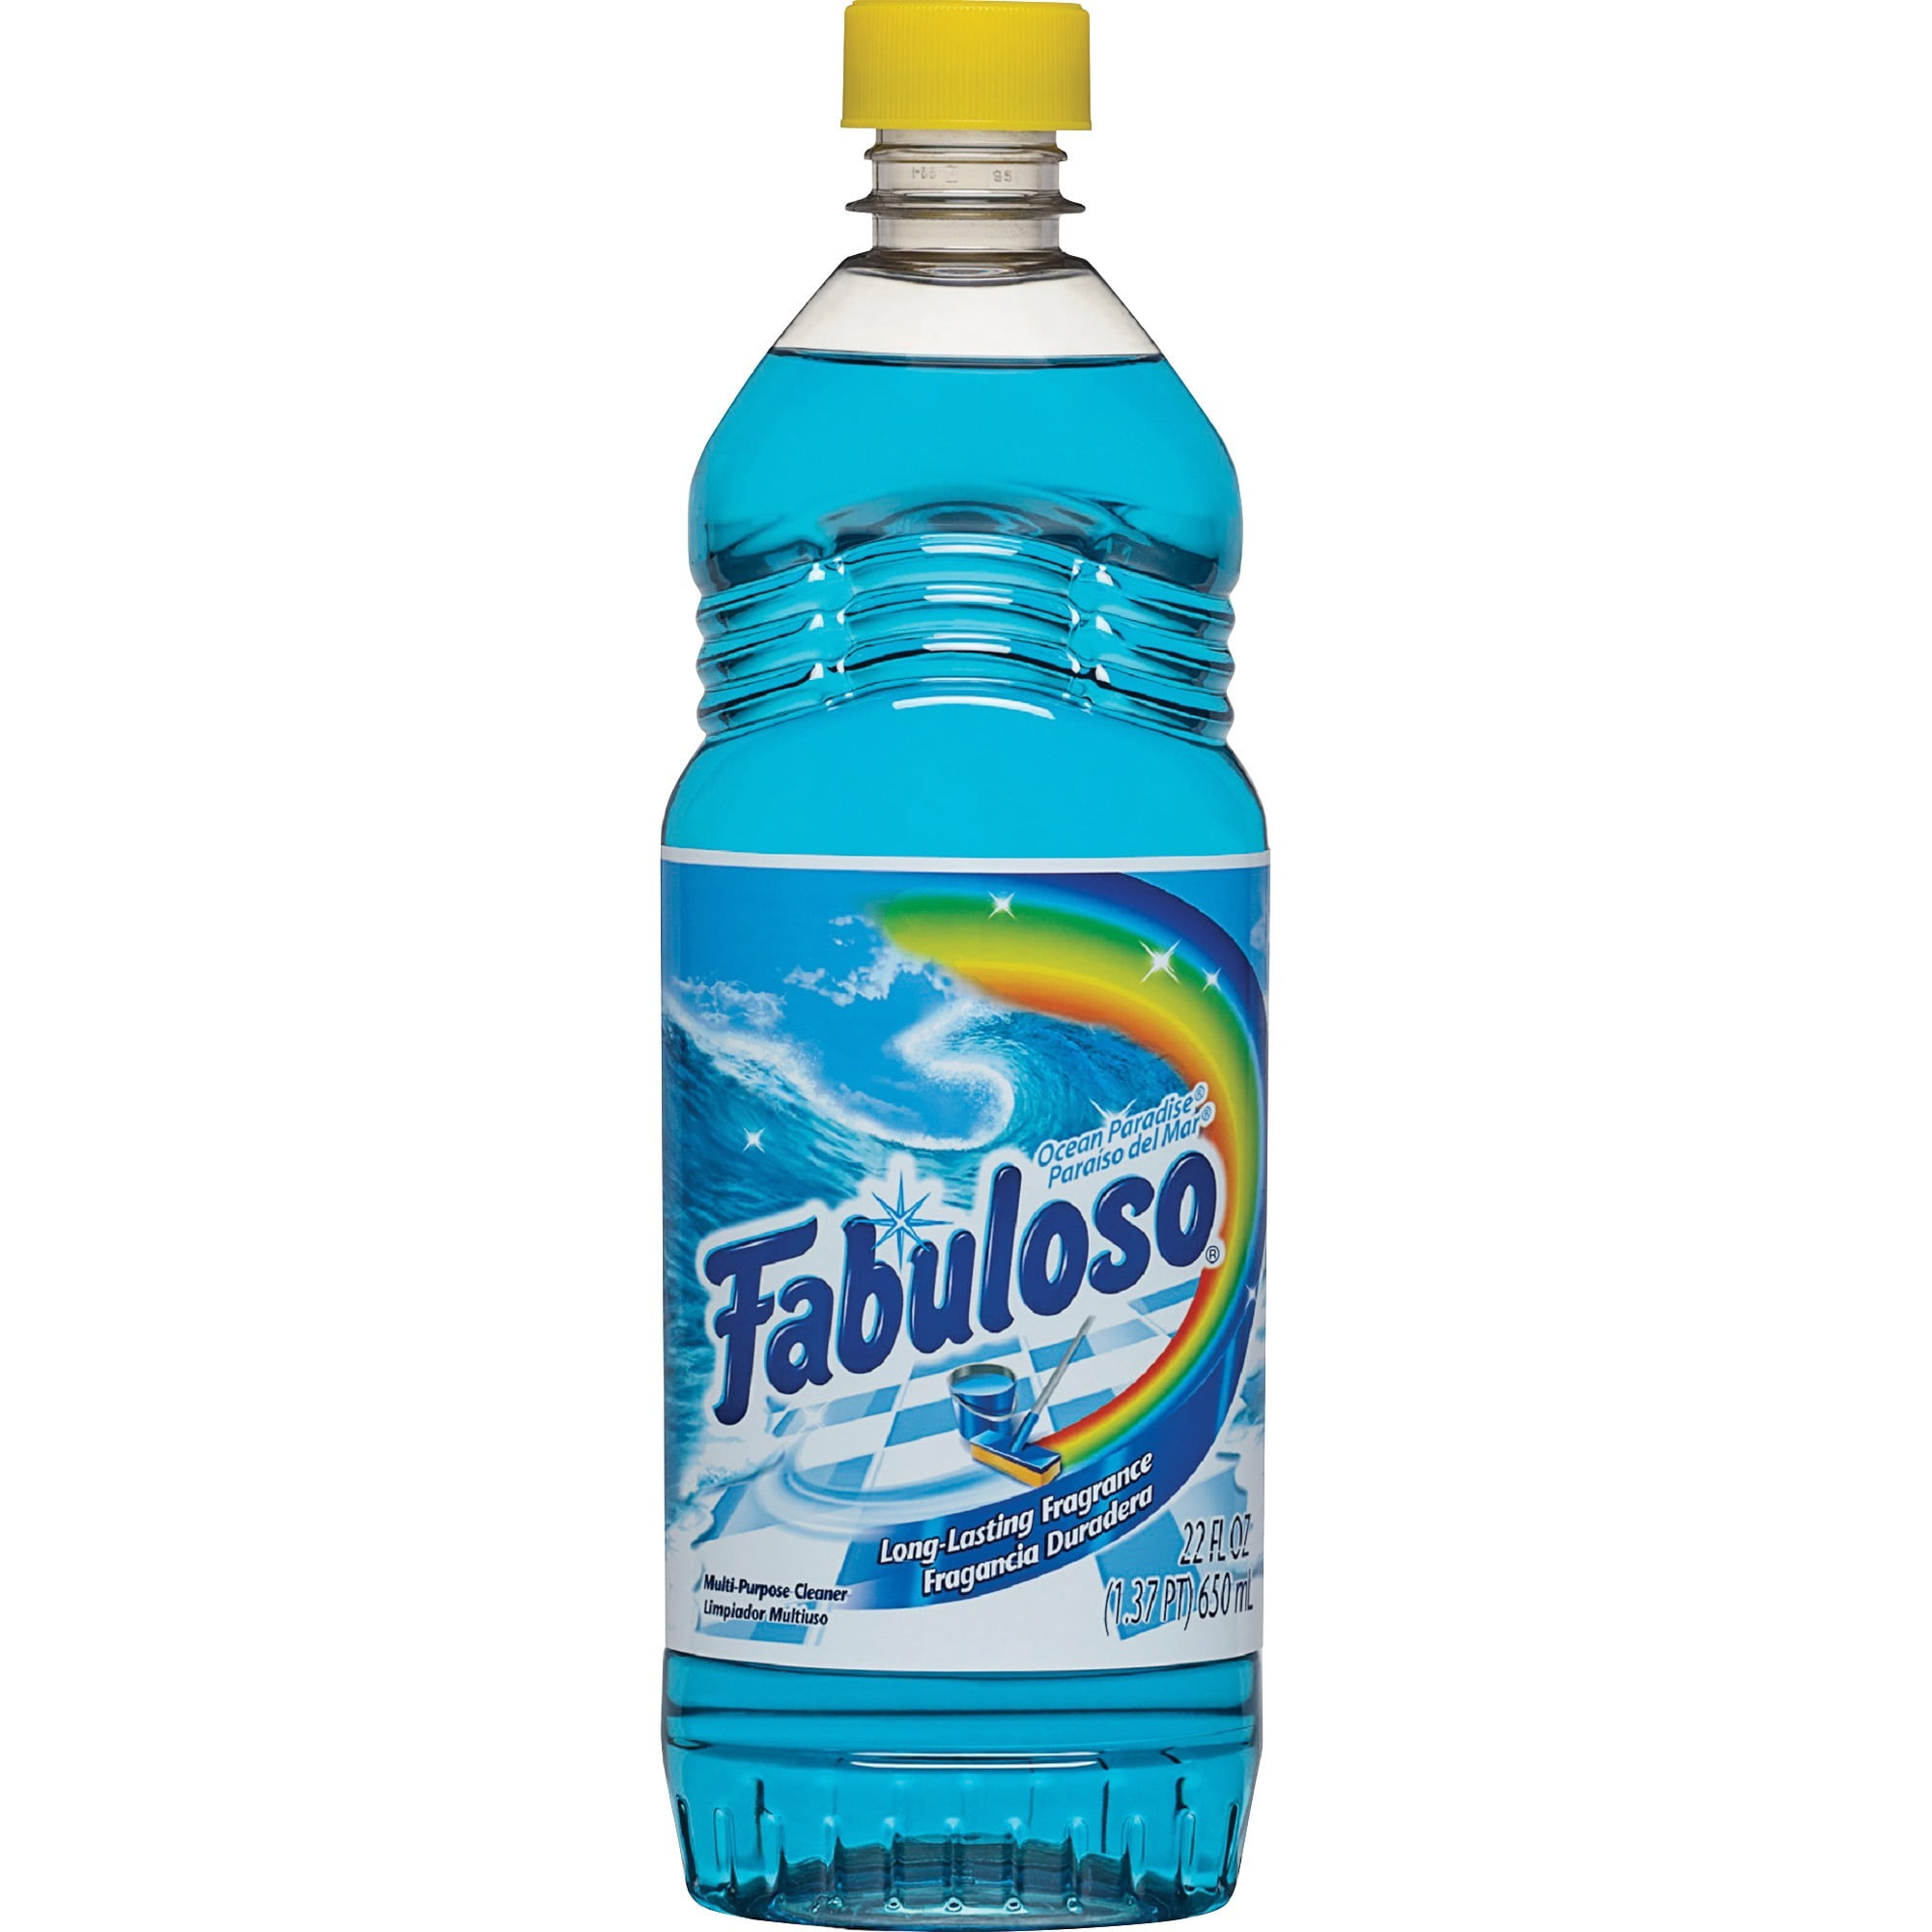 Fabuloso, CPC53106CT, Ocean Paradise Cleaner, 12 / Carton